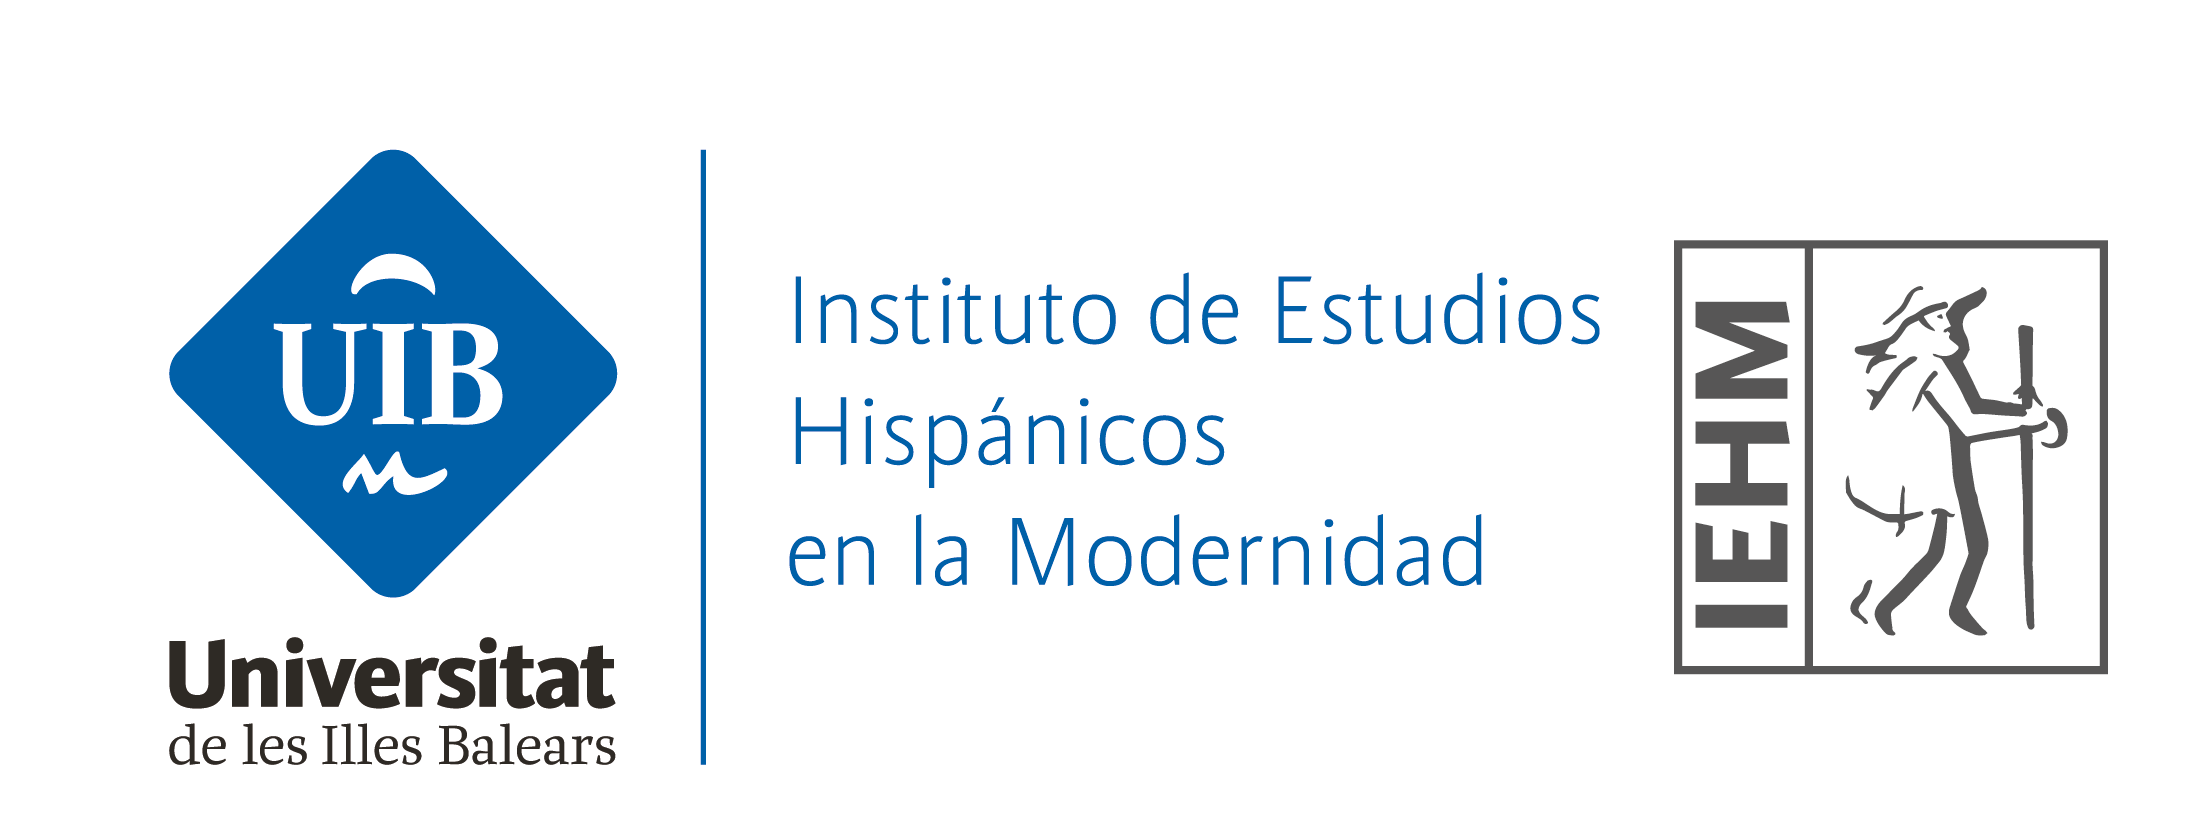 Instituto de Estudios Hispánicos en la Modernidad